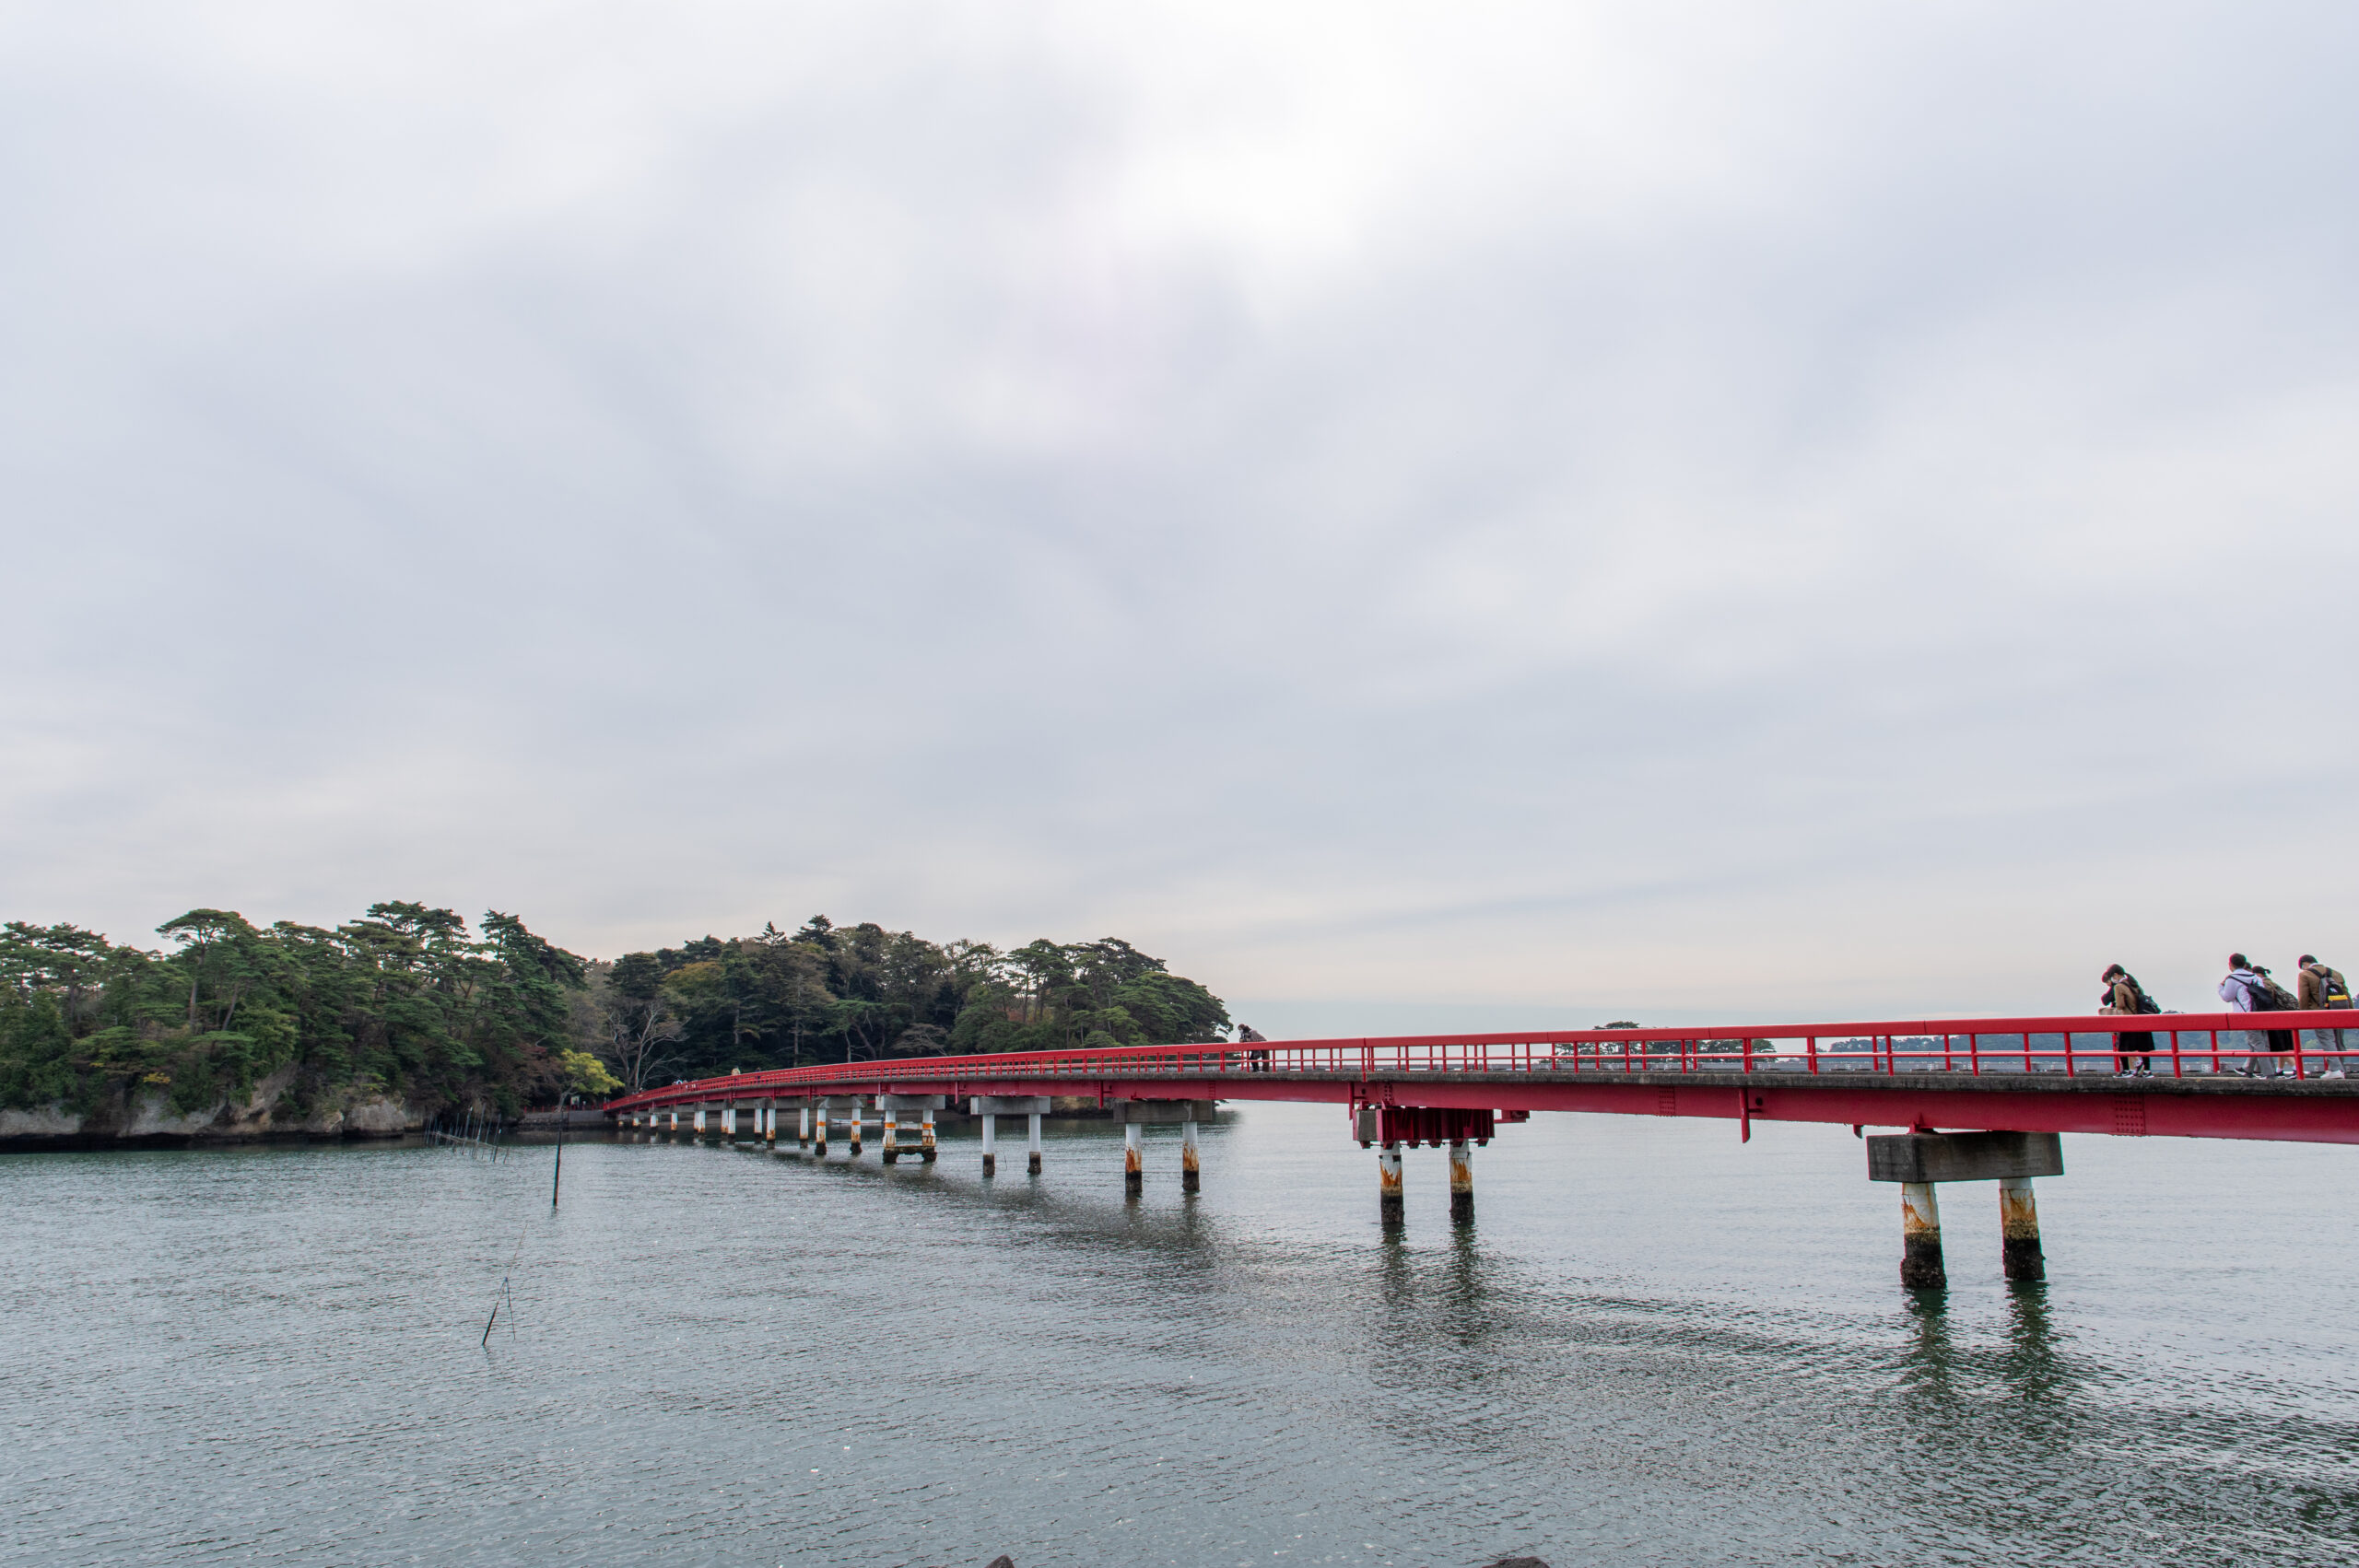 宮城県が誇る観光スポットへ電車を使っていってみよう。宮城県の福浦島への行き方。